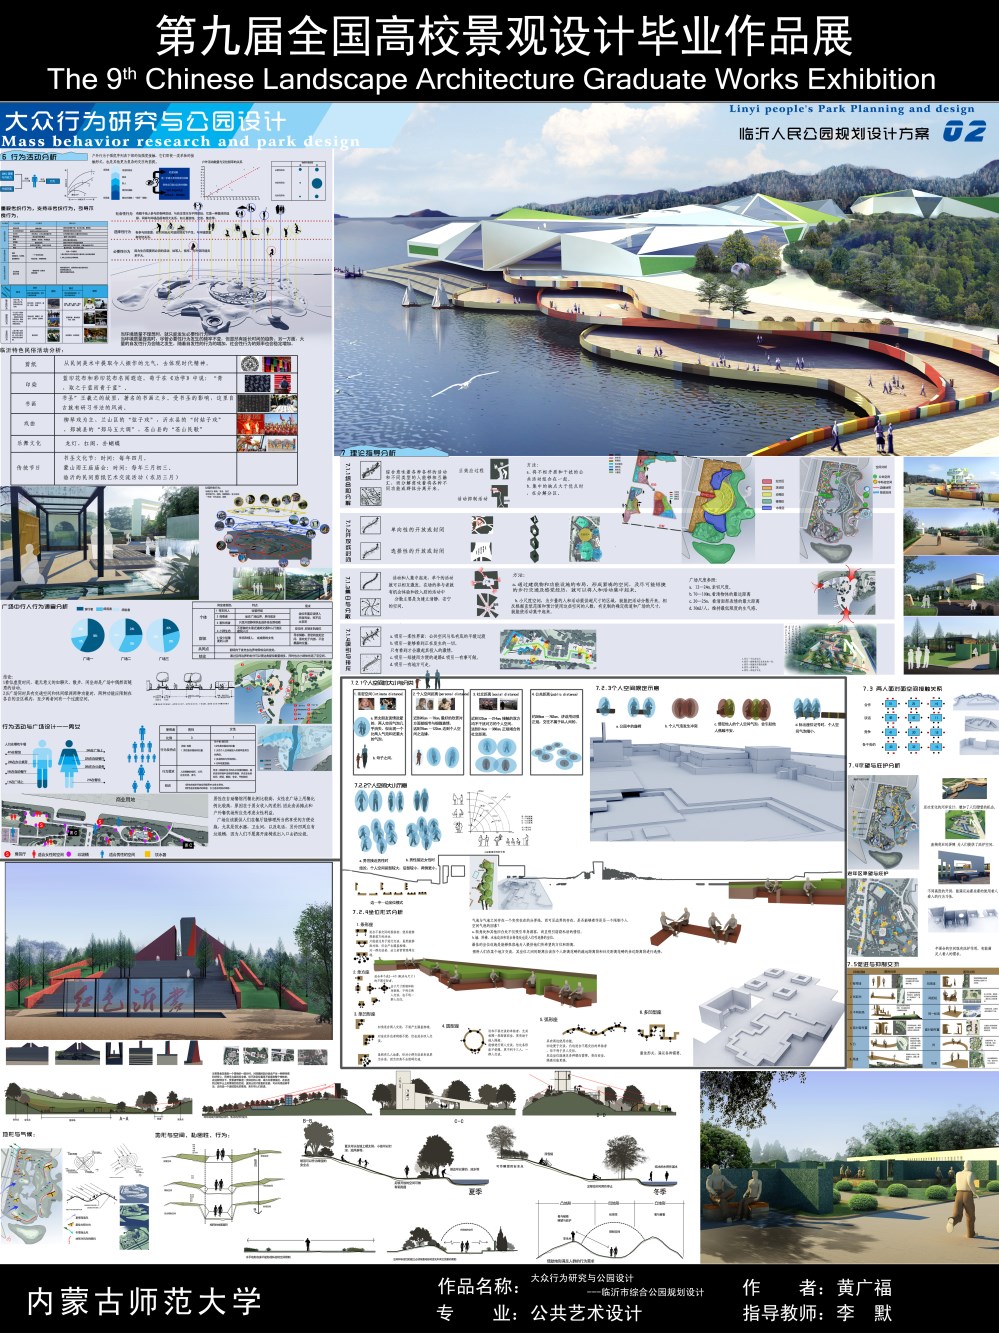 大众行为研究与公园设计---临沂市综合公园规划设计-2